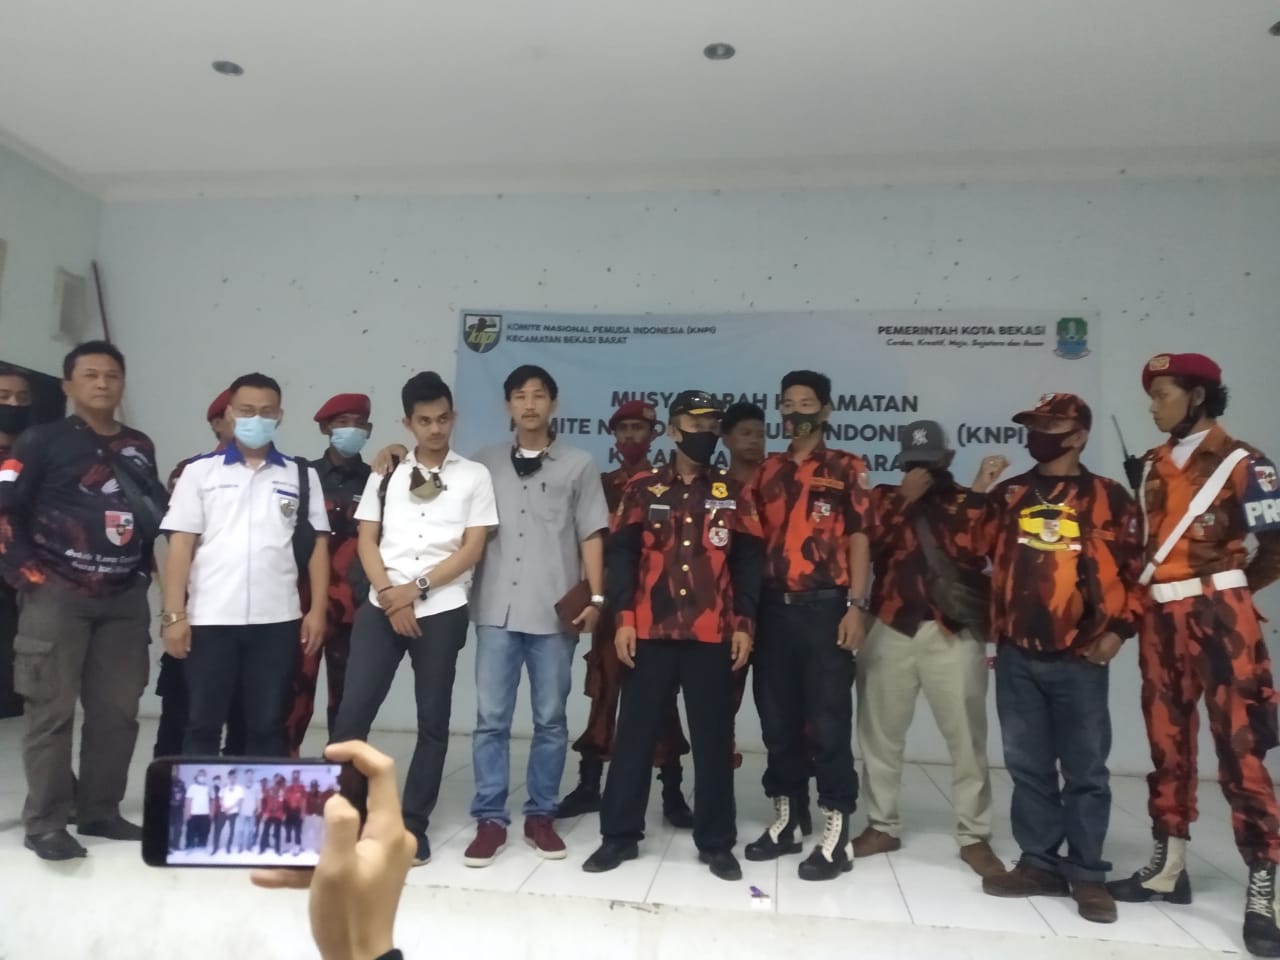 Sesi foto bersama usai terselenggaranya Muscam Bekasi Barat, Senin (7/12/2020). Foto: Gobekasi.id